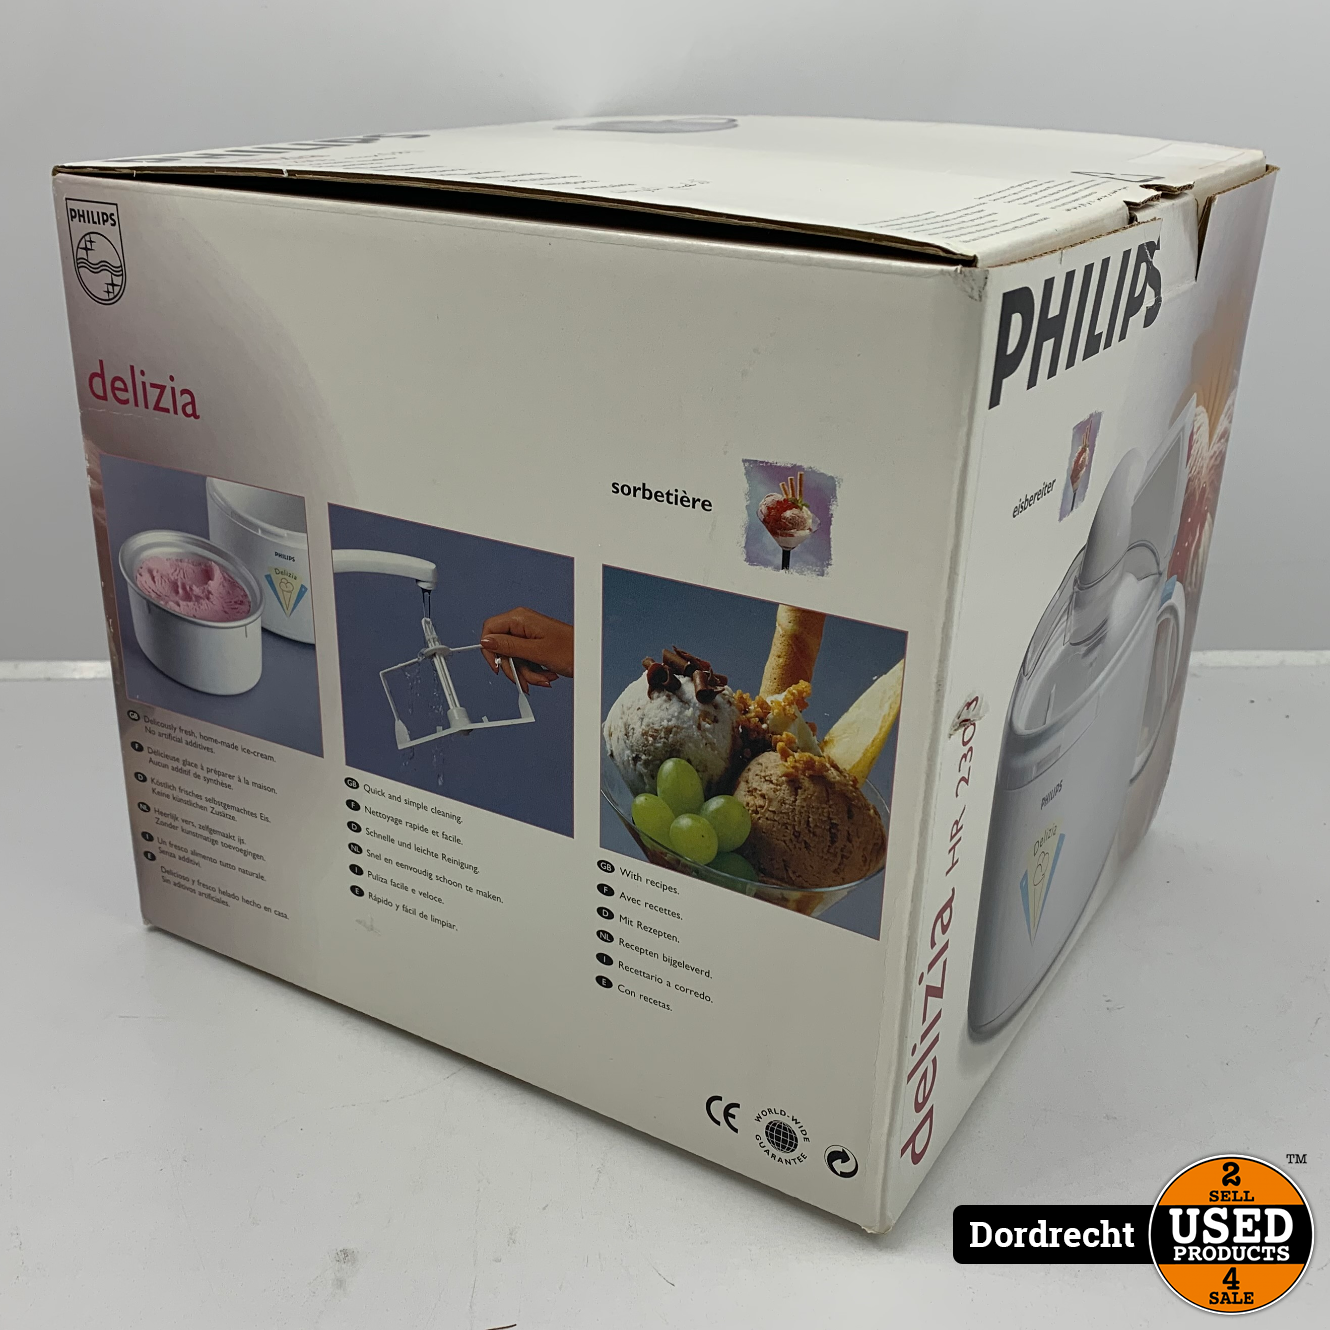 Philips delizia hr ijsmachine in doos | Met garantie Used Products Dordrecht